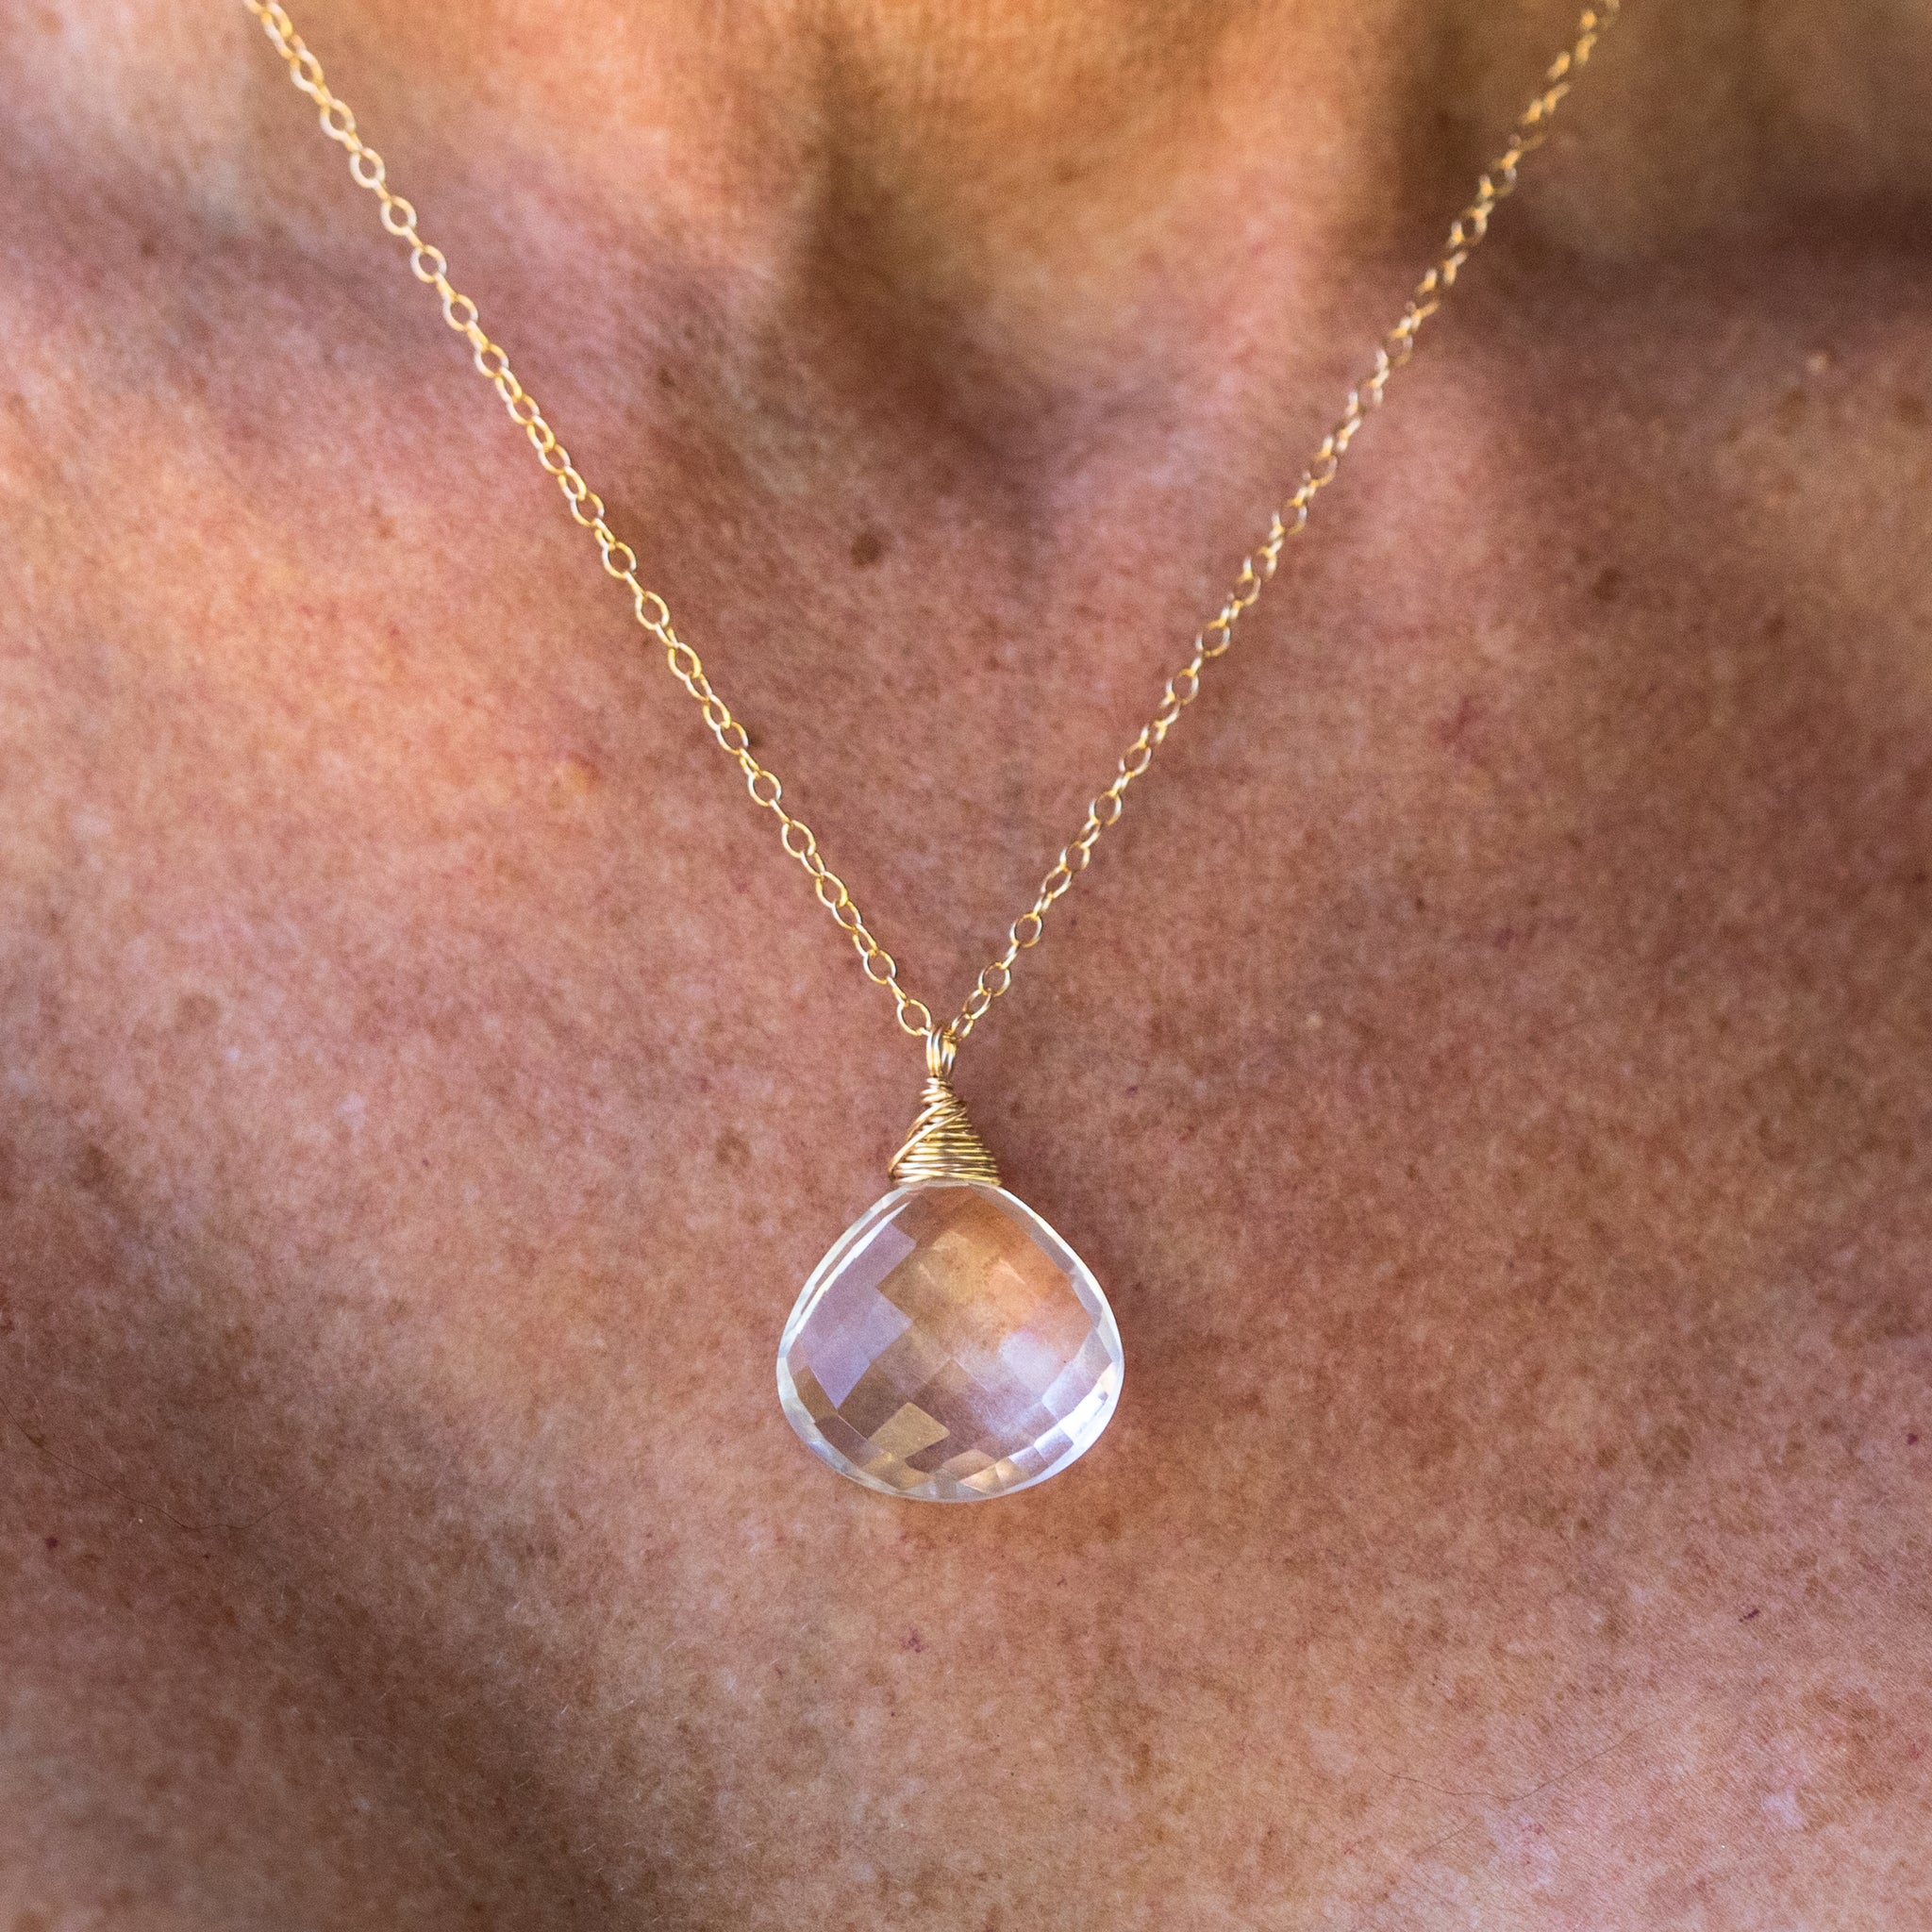 Quartz (Rose) obelisk point necklace healing crystal - Crystal Concentrics